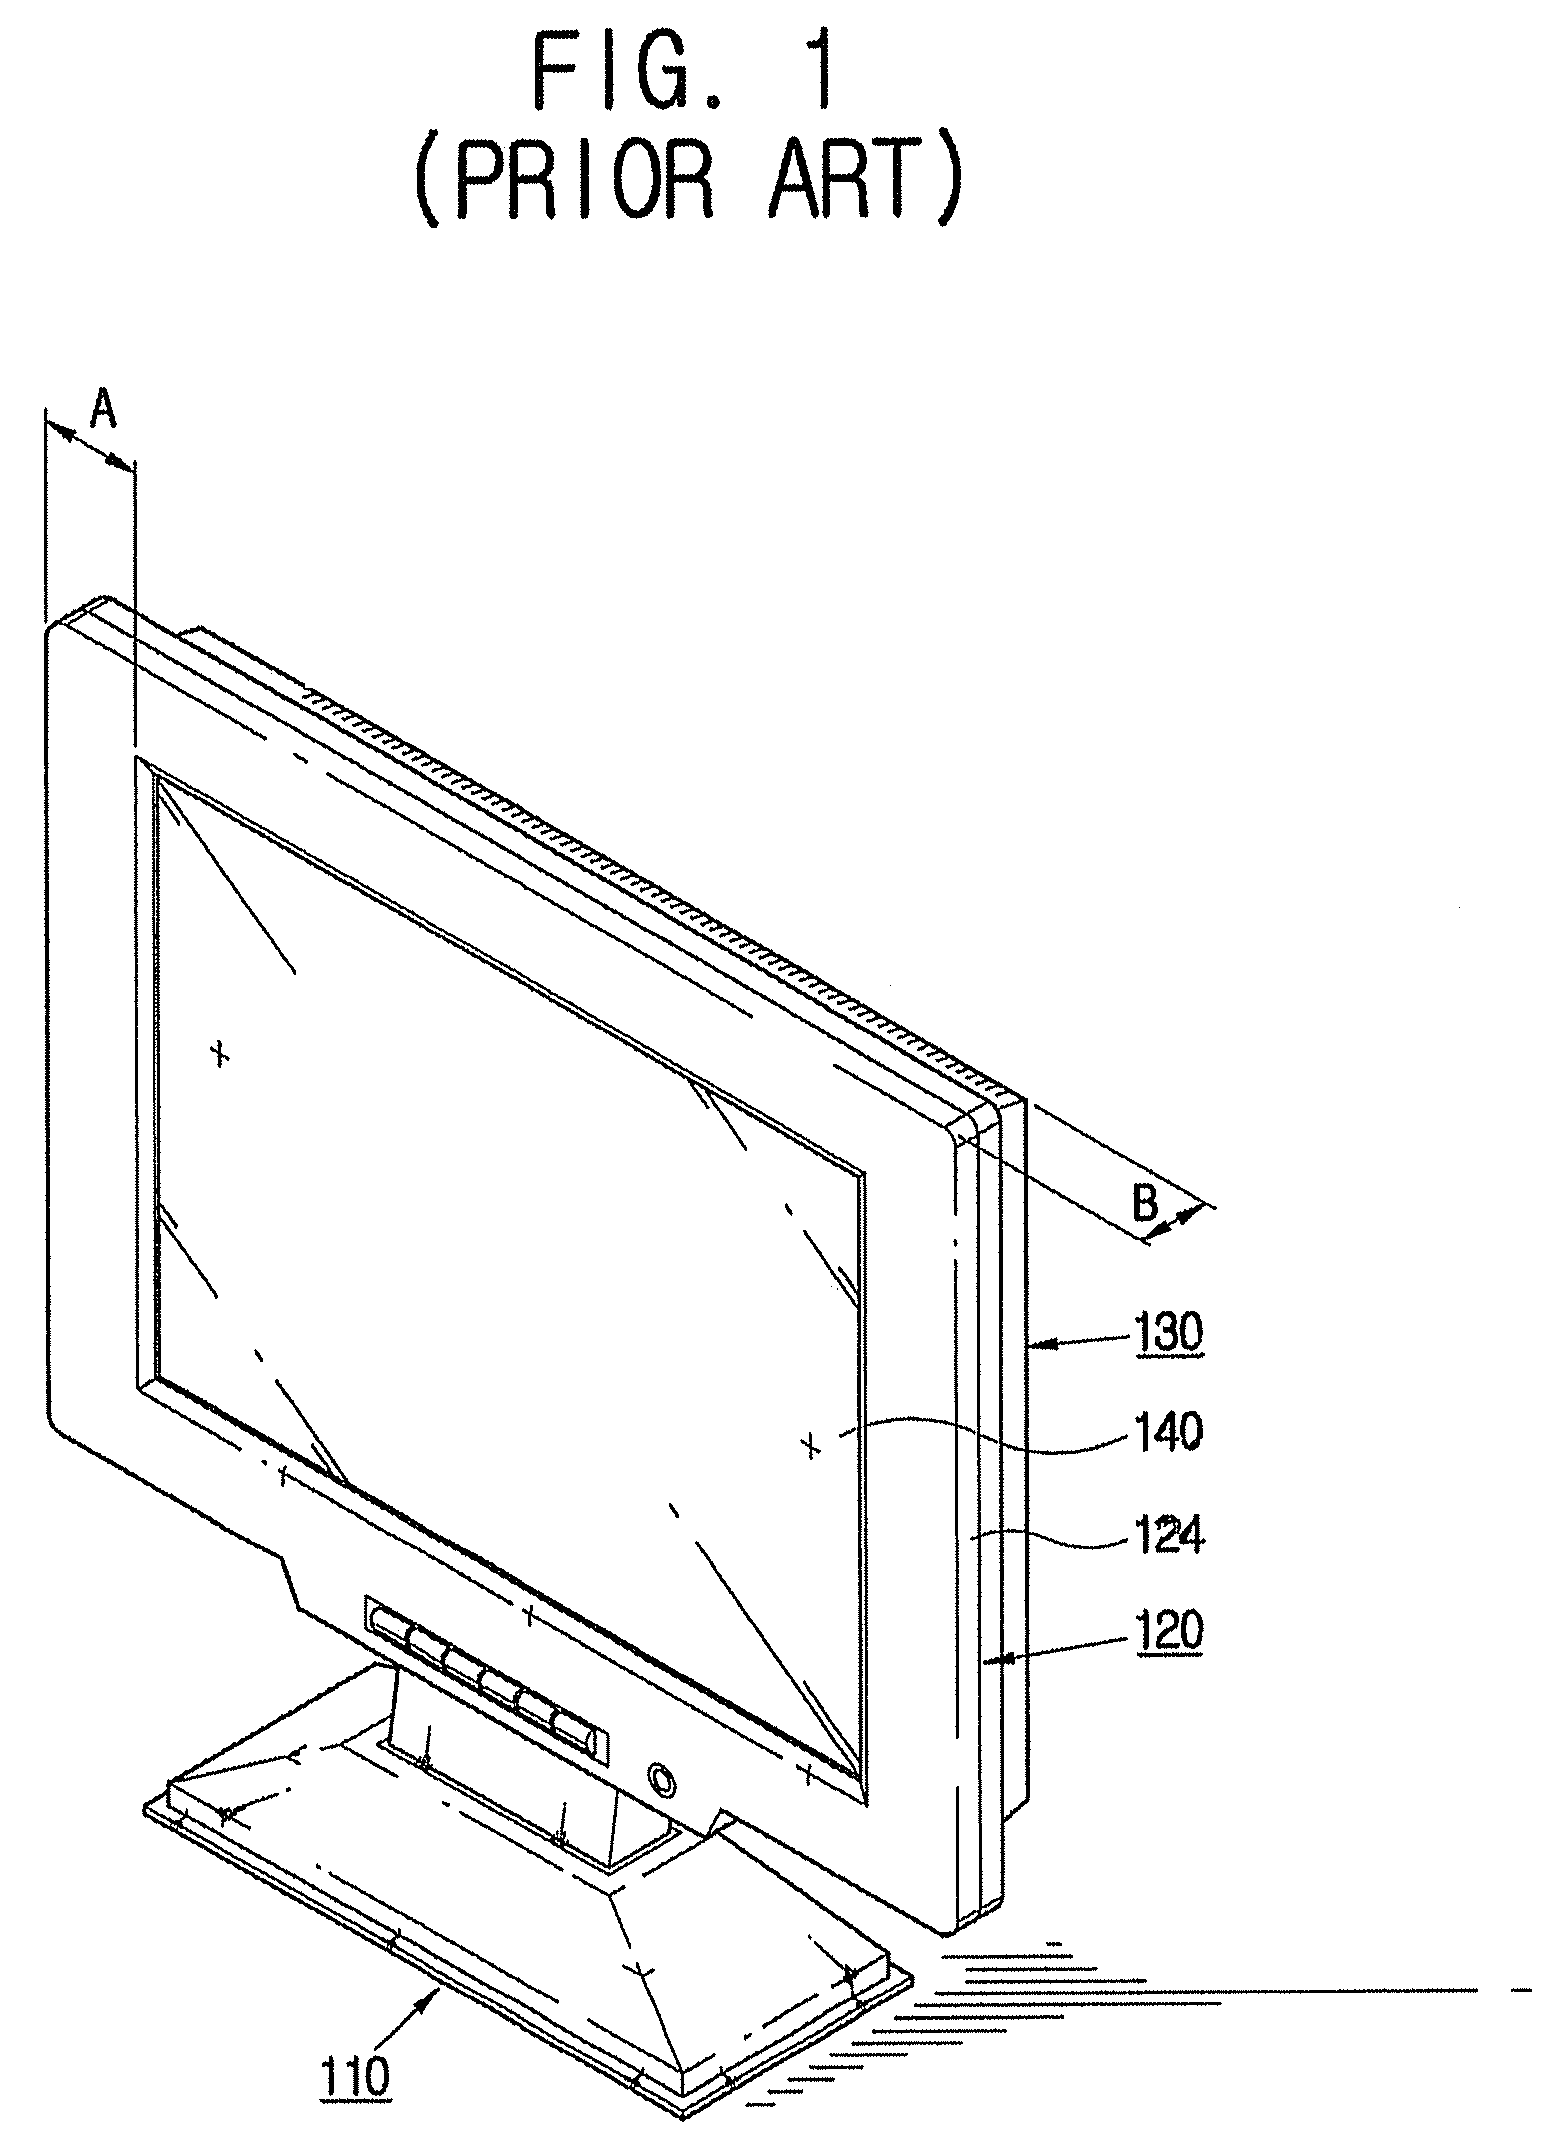 Thin display apparatus